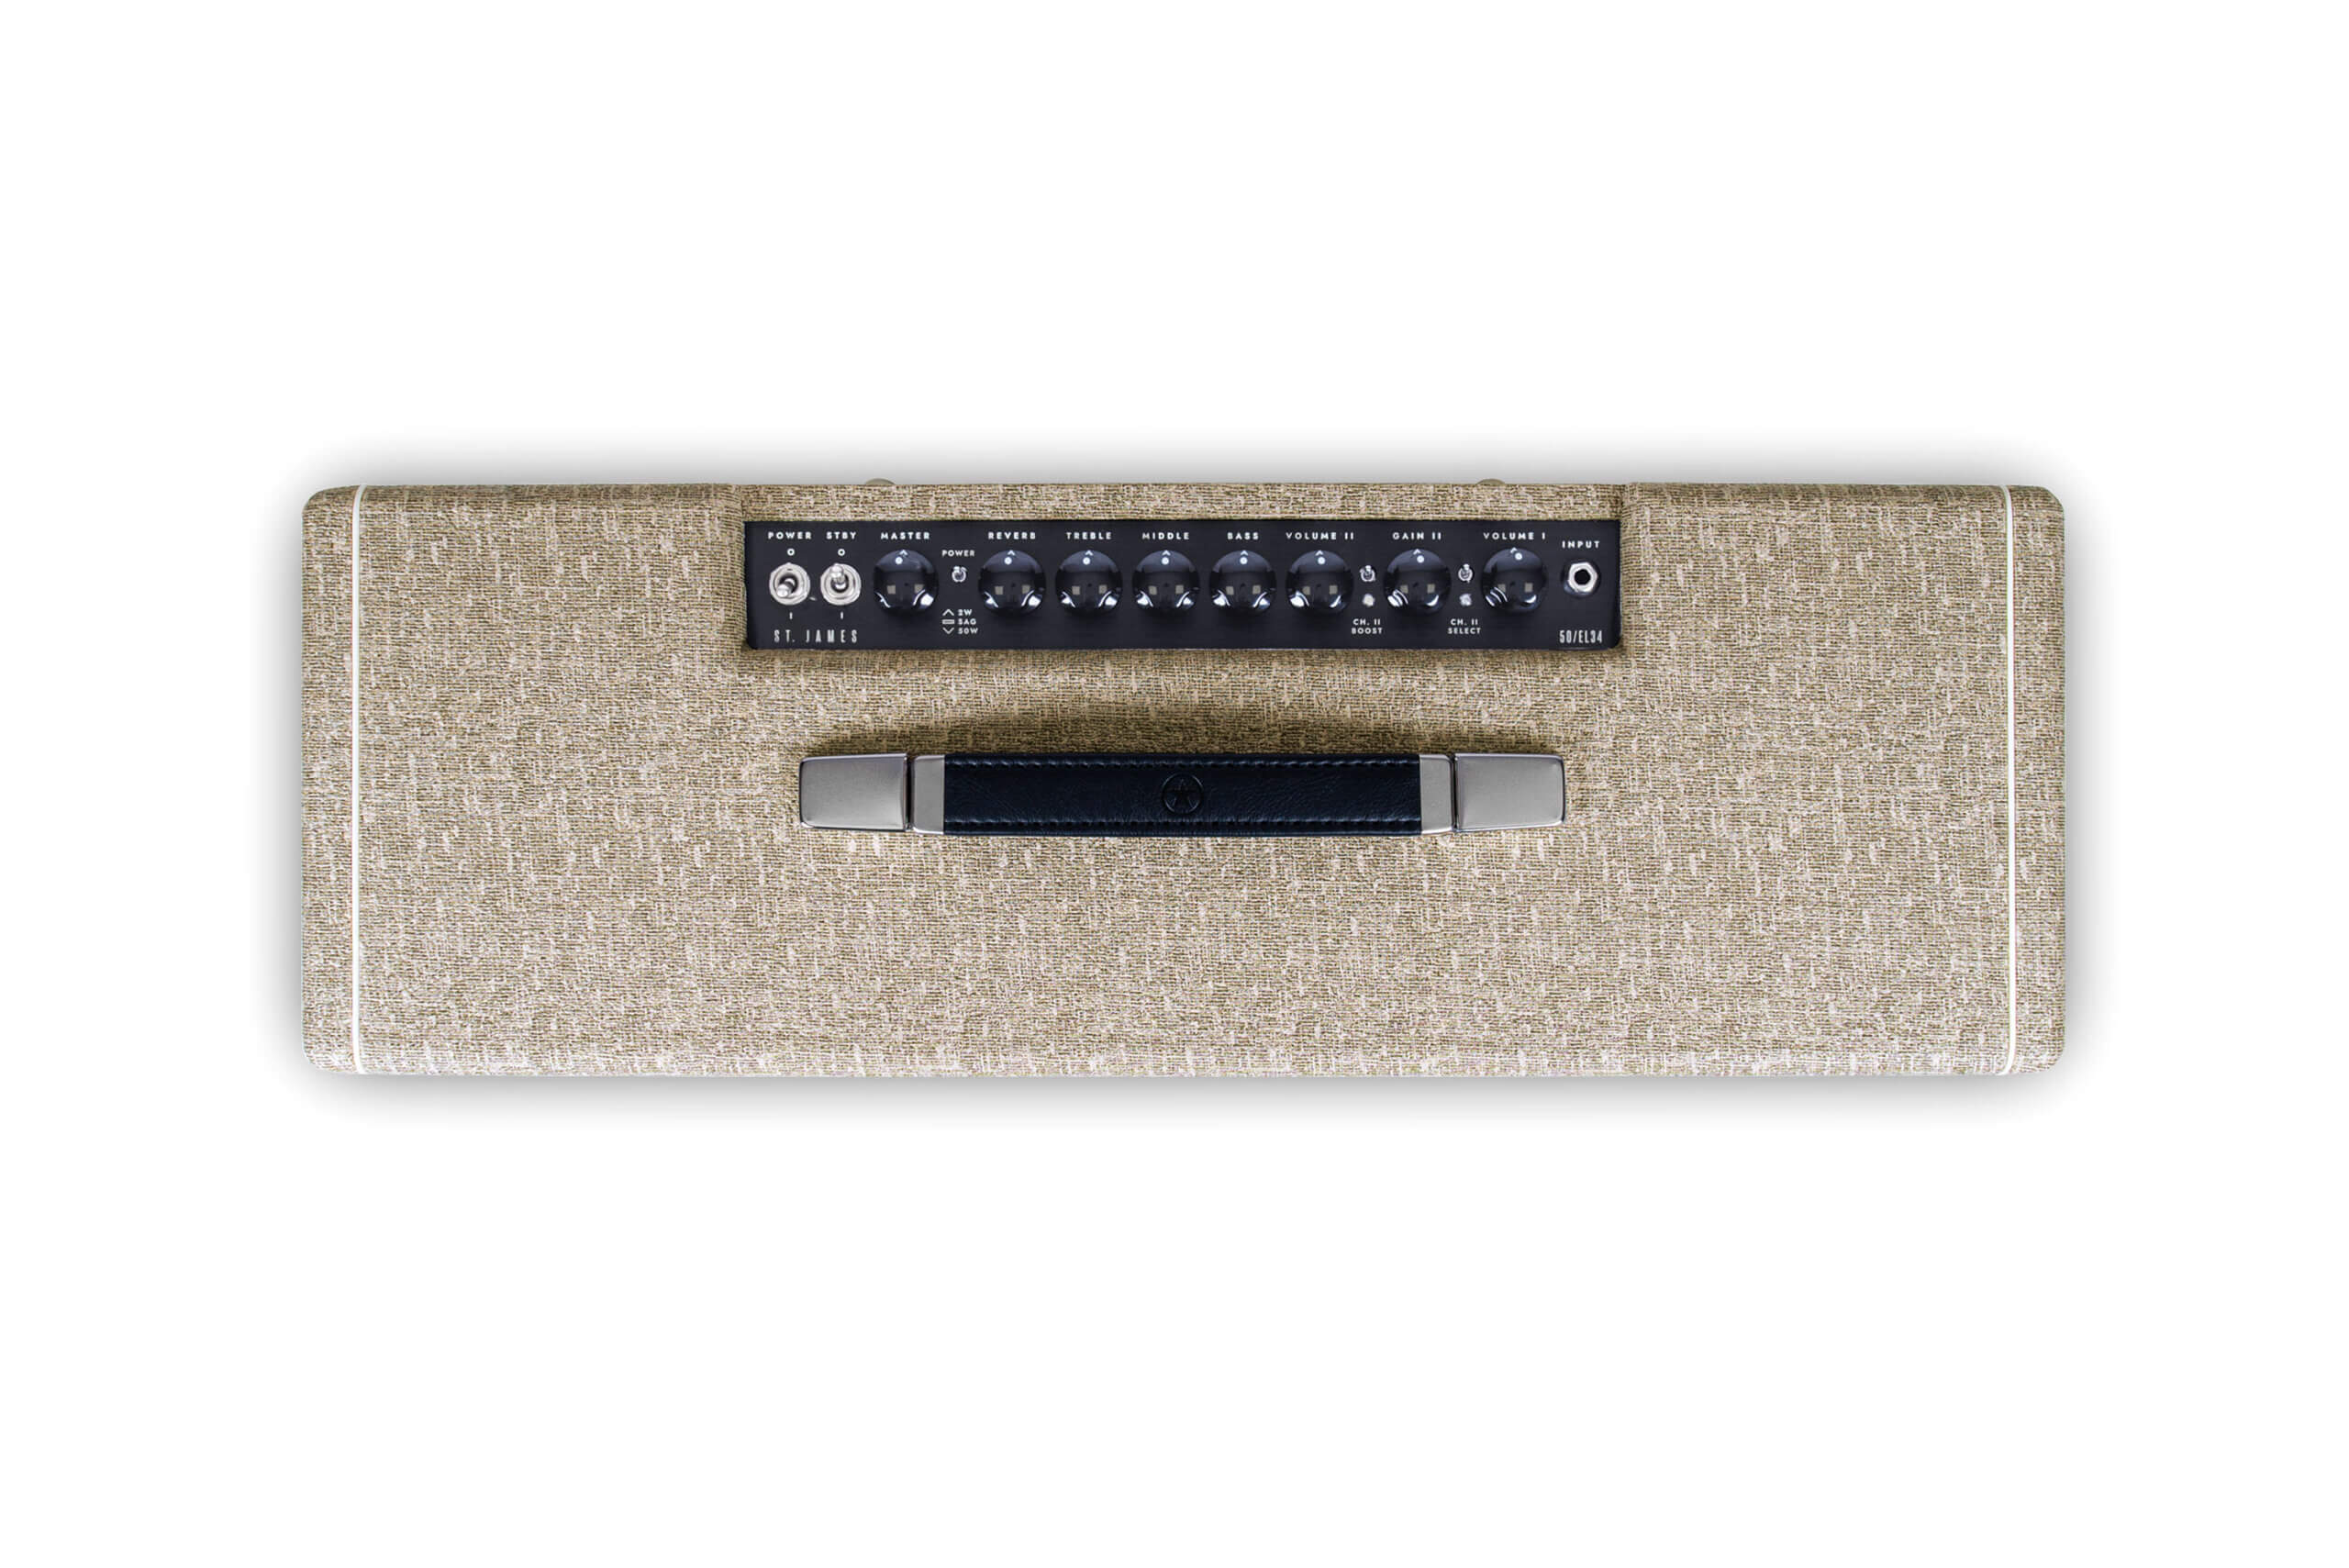 Blackstar Amps St. James EL34 212 Combo guitar amplifier controls